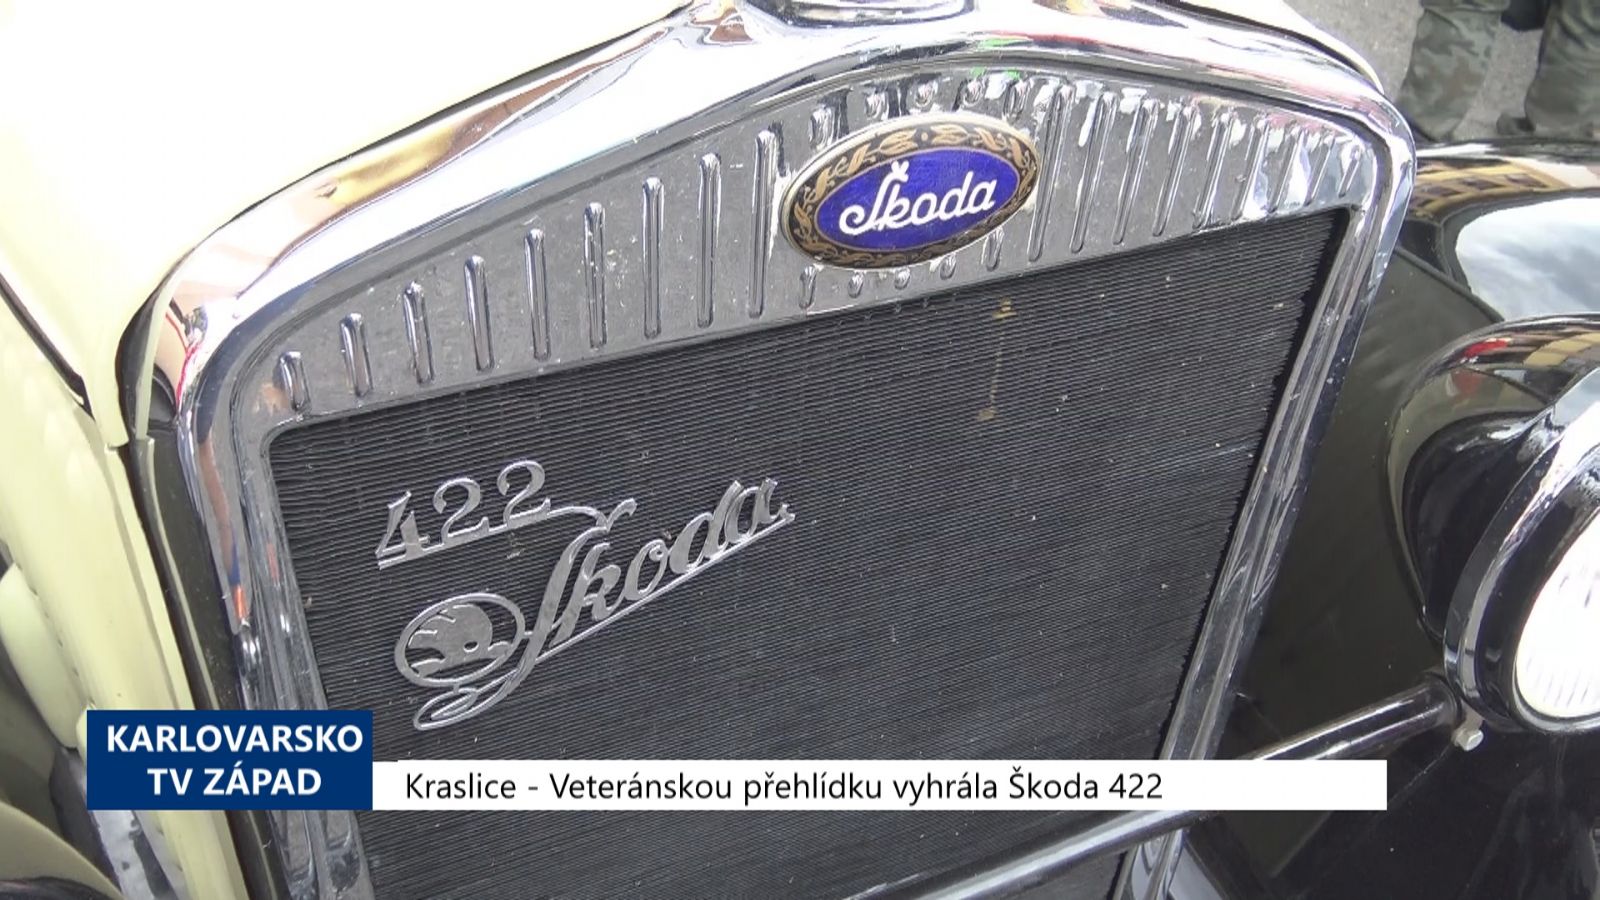 Kraslice: Veteránskou přehlídku vyhrála Škoda 422 (TV Západ)